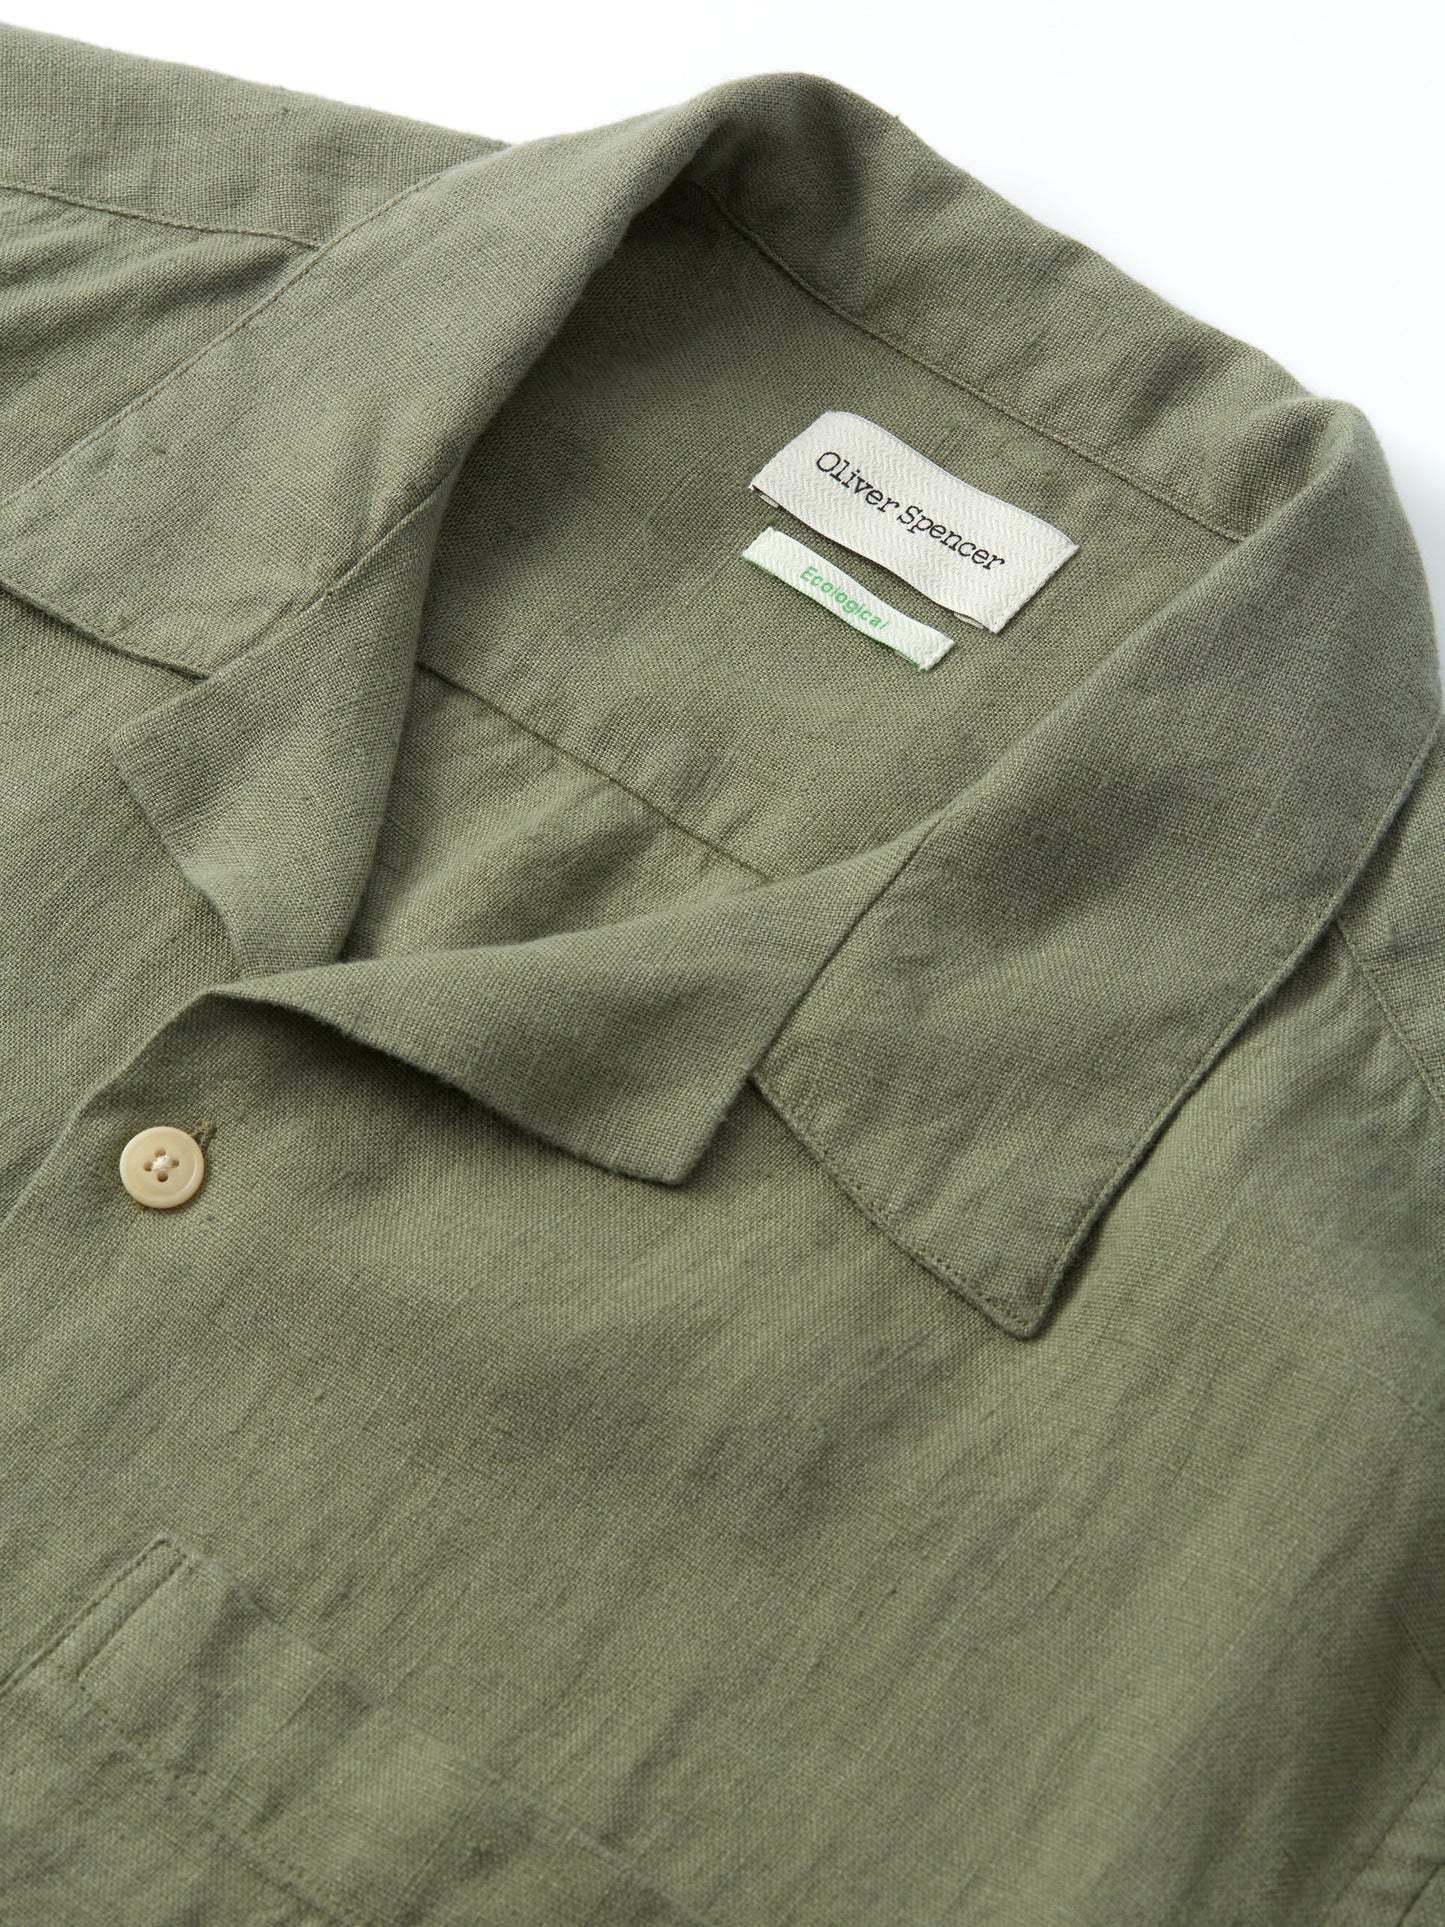 
                  
                    Havana S/S Shirt - Coney Green
                  
                